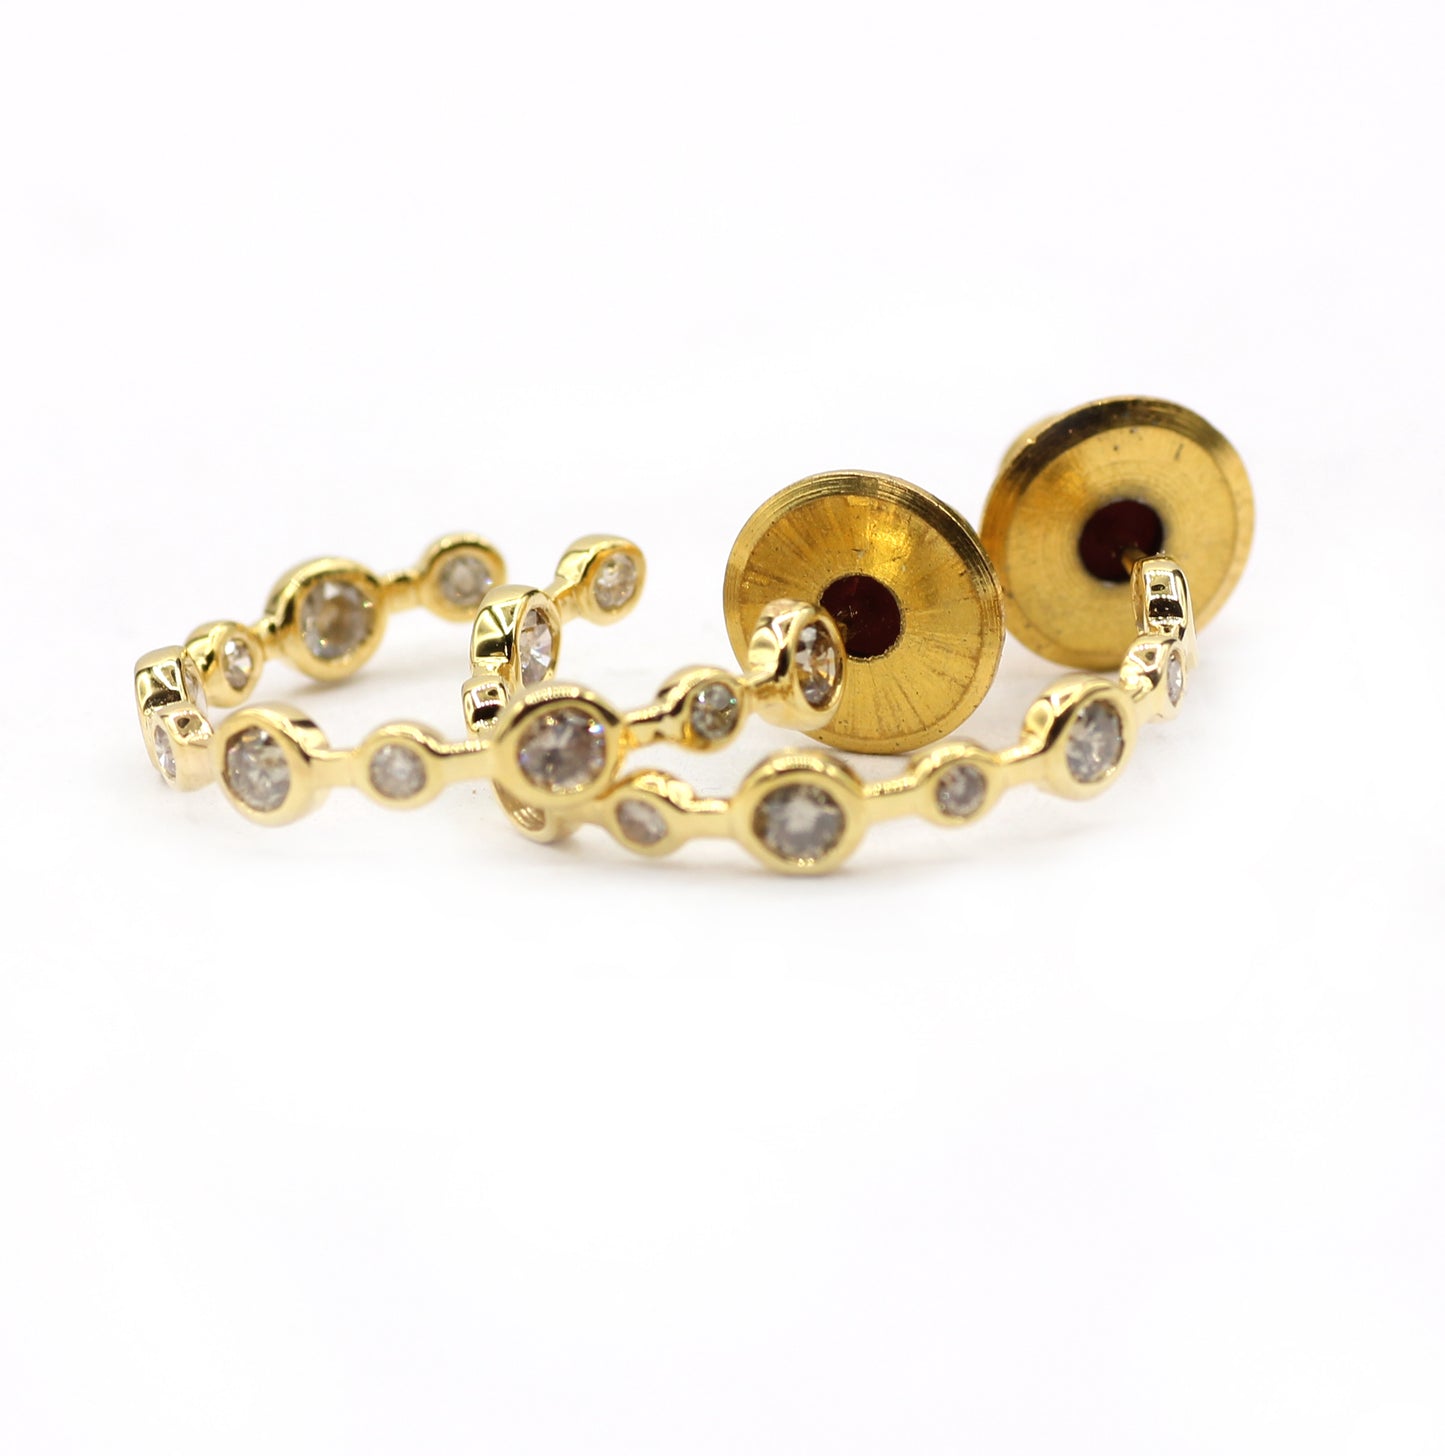 Loop 14k Solid Gold Diamond Earring. Genuine handmade pave diamond Earring. 14k Solid Gold Diamond Earring..